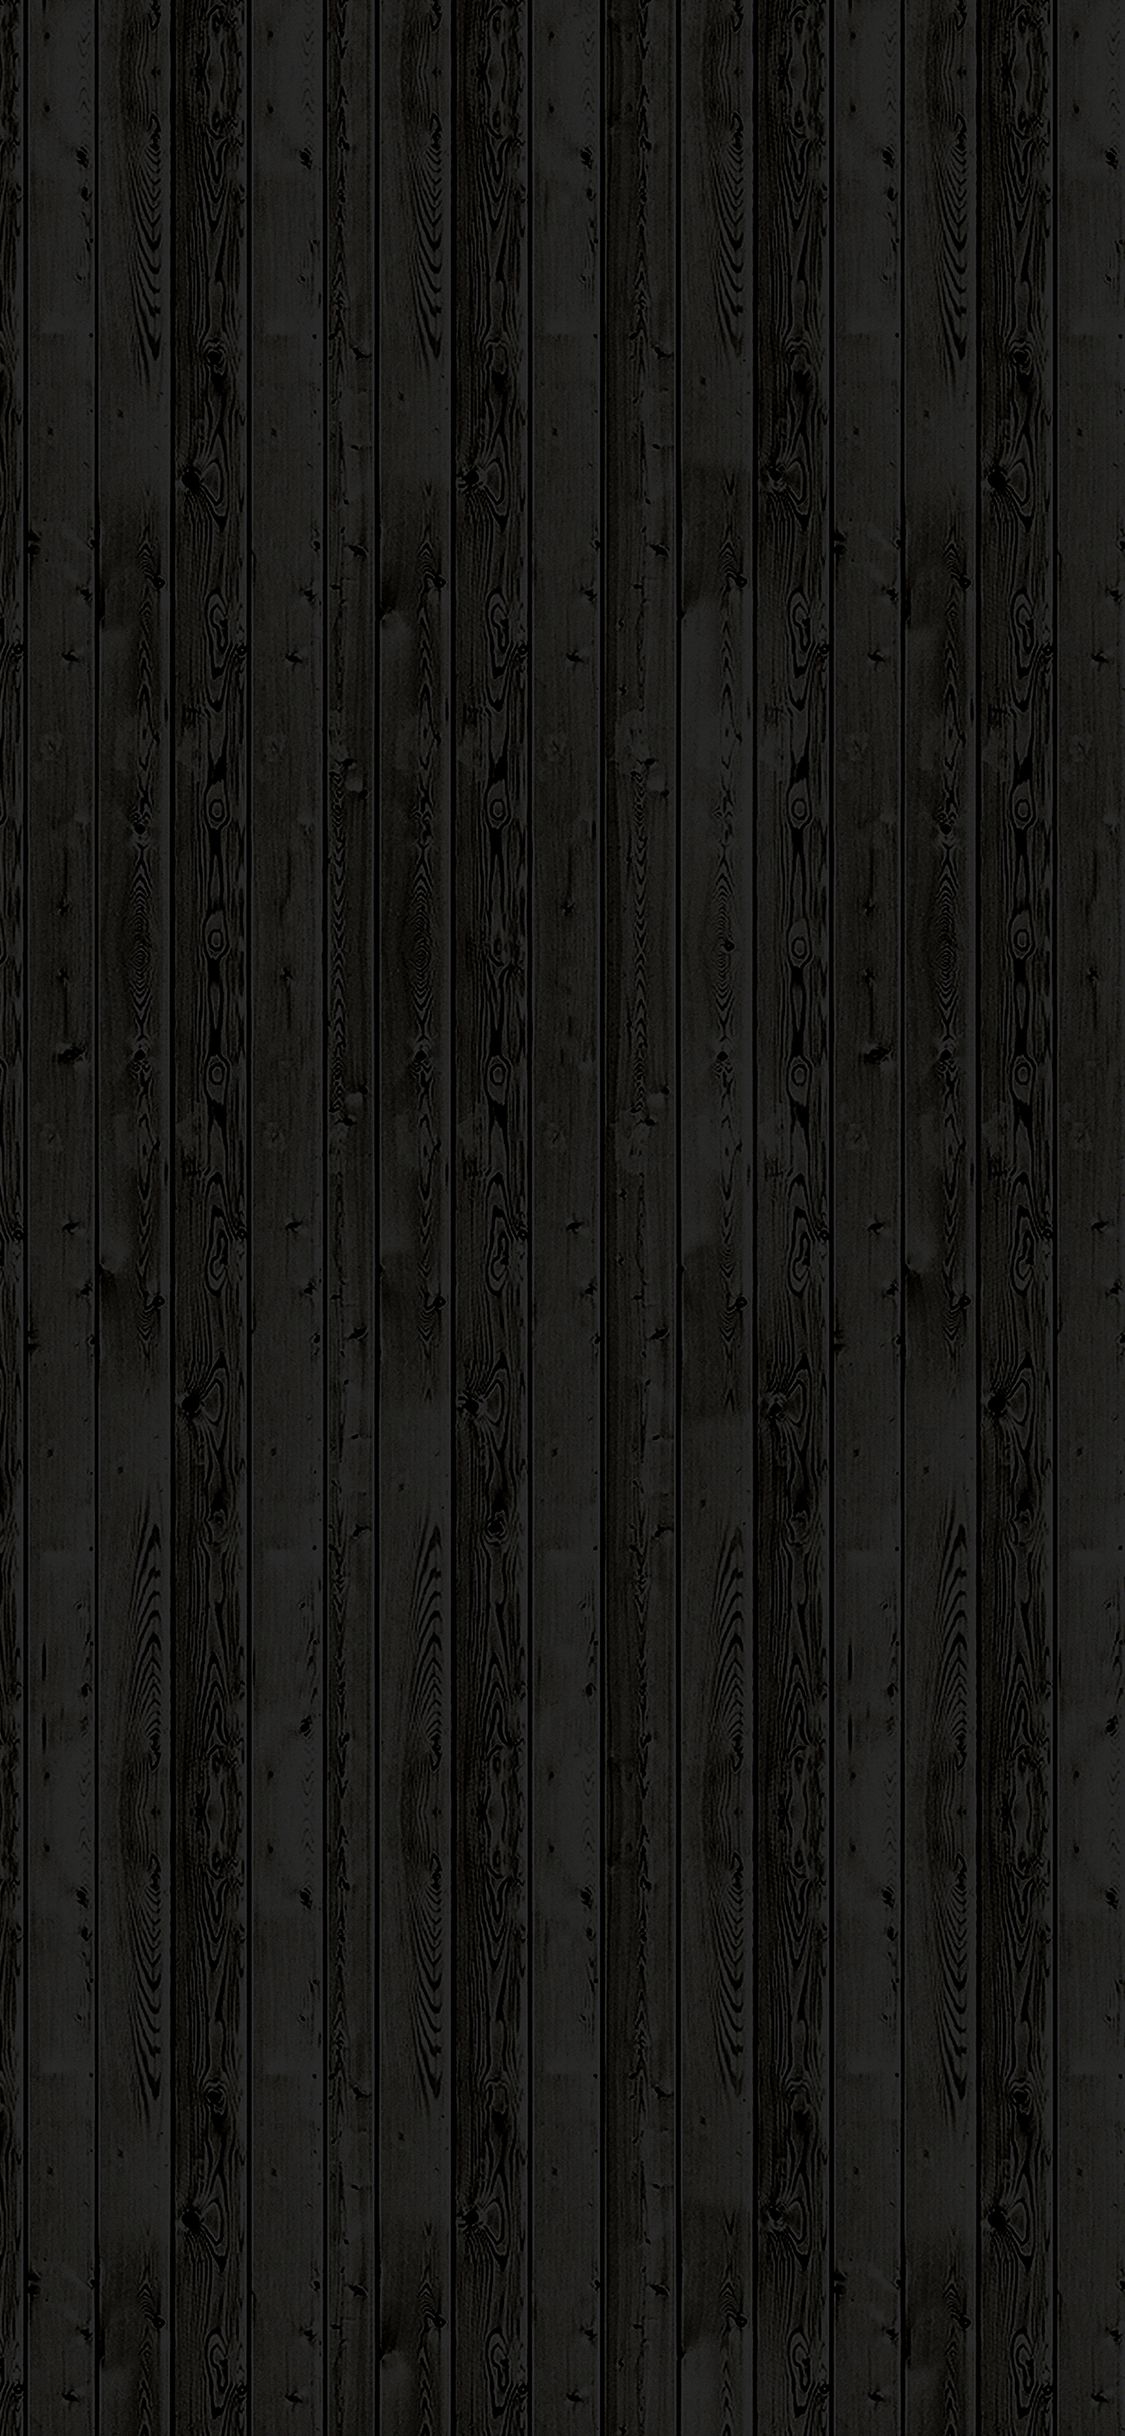 Wooden floor black pattern dark iPhone wallpaper 